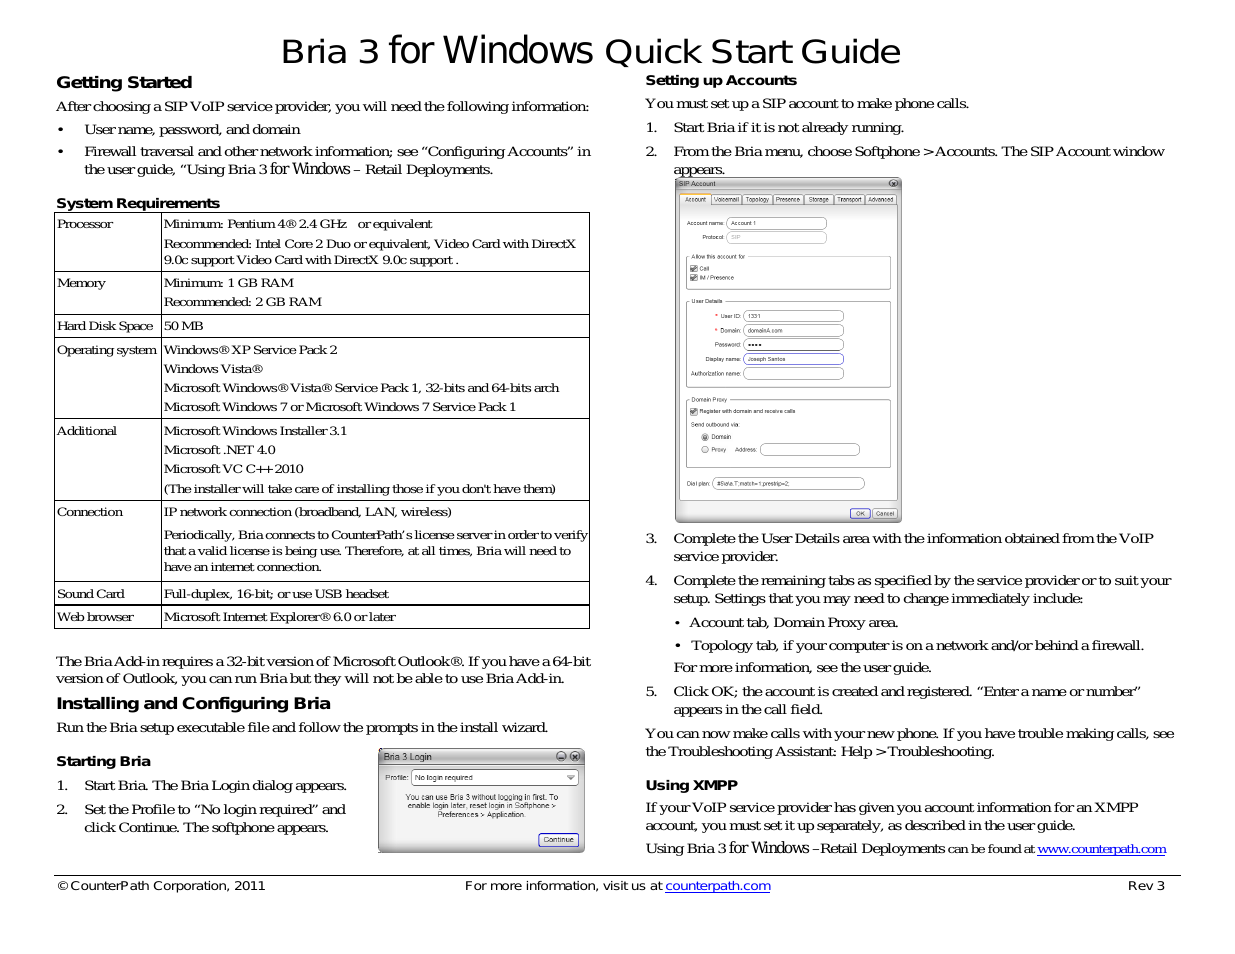 Bria 3.2 for Windows Quick Start Guide